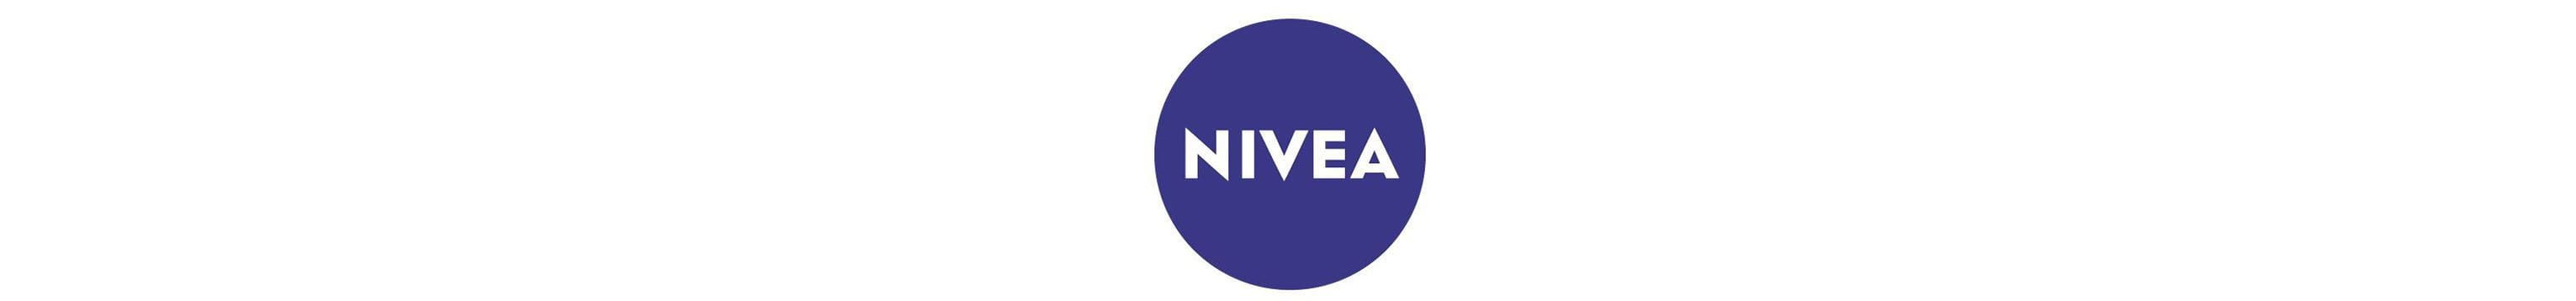 NIVEA лого